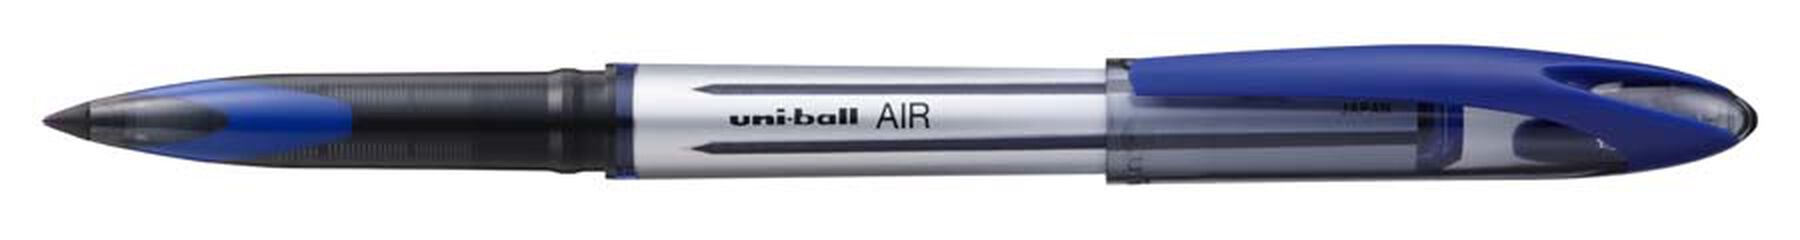 Roller Uni-ball Air UBA-188 azul